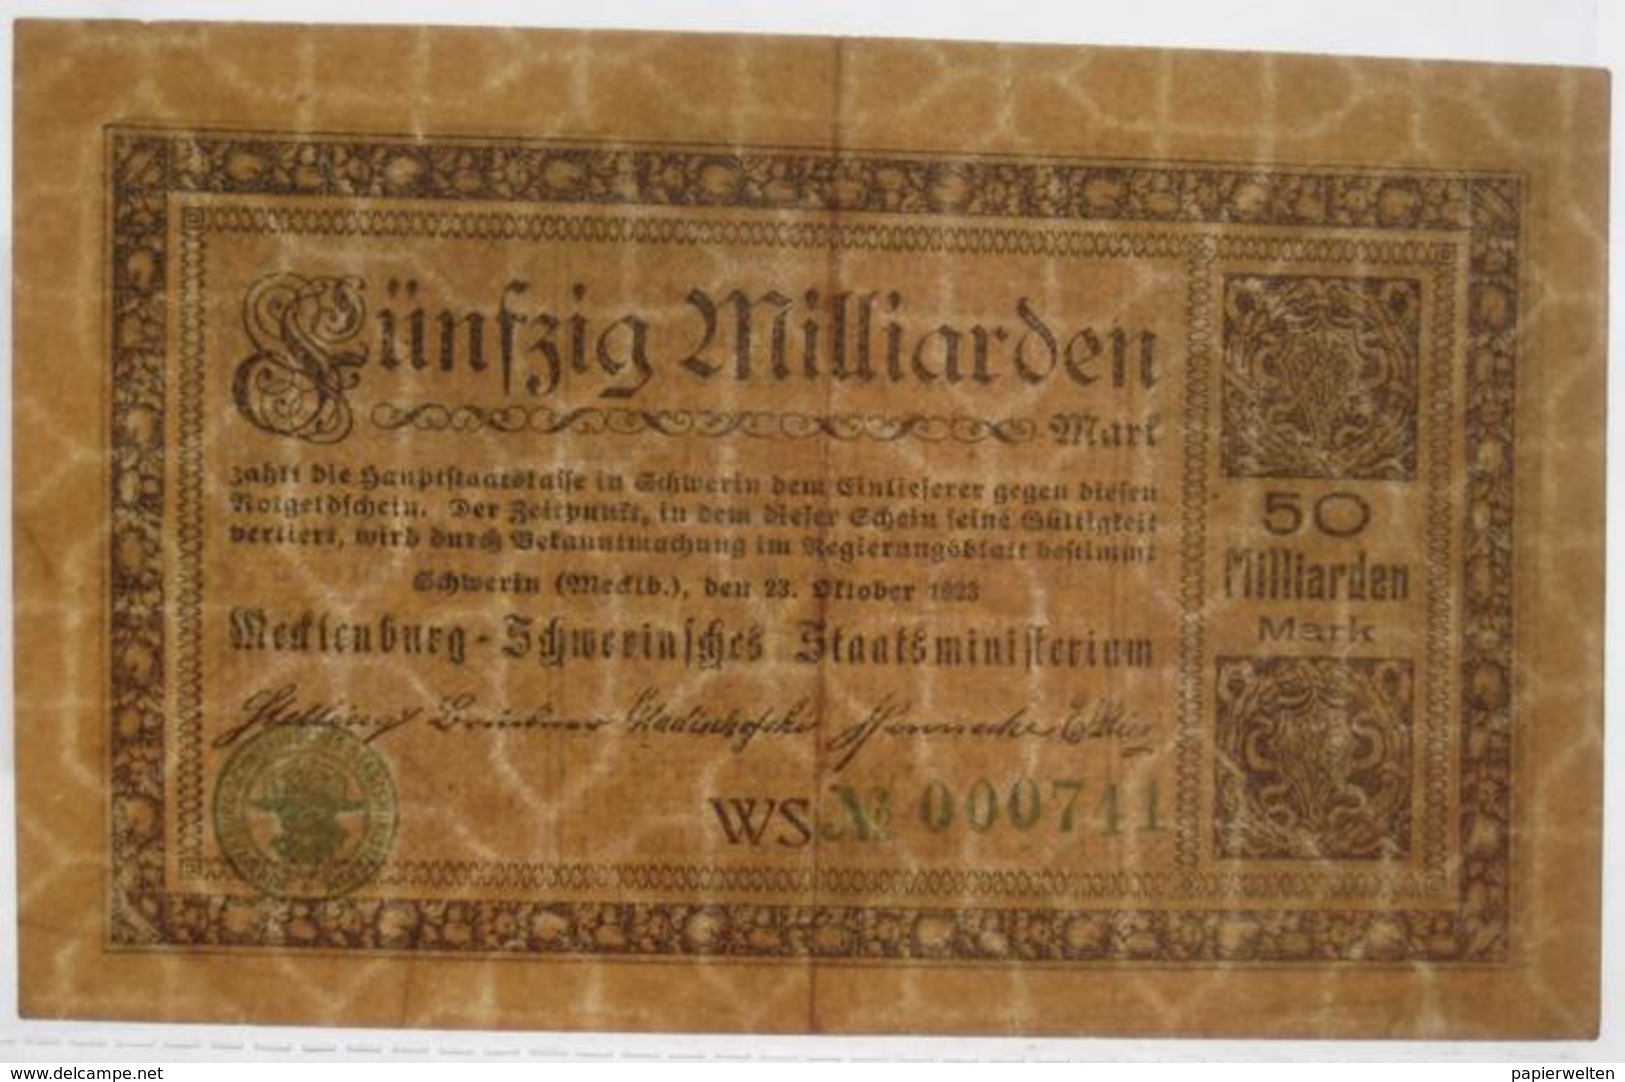 Mecklenburg-Schwerin 50000000000 Mark 23.10.1923 / Mecklenburg-Schwerinsches Staatsministerium 50 Milliarden - 50 Milliarden Mark